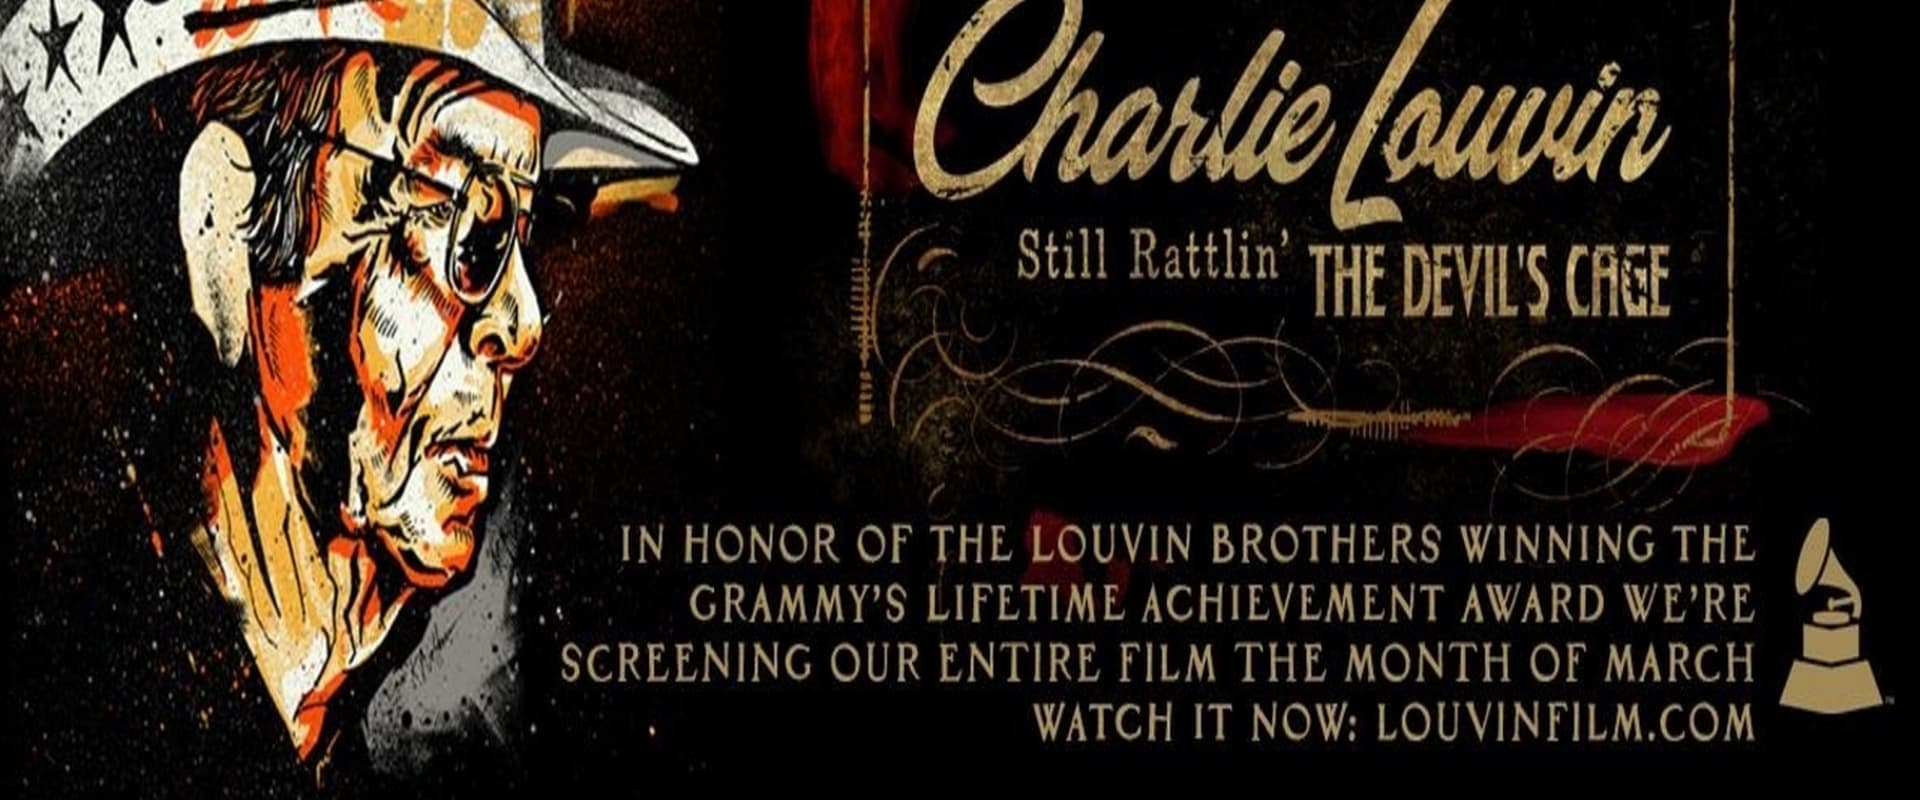 Charlie Louvin: Still Rattlin' the Devil's Cage